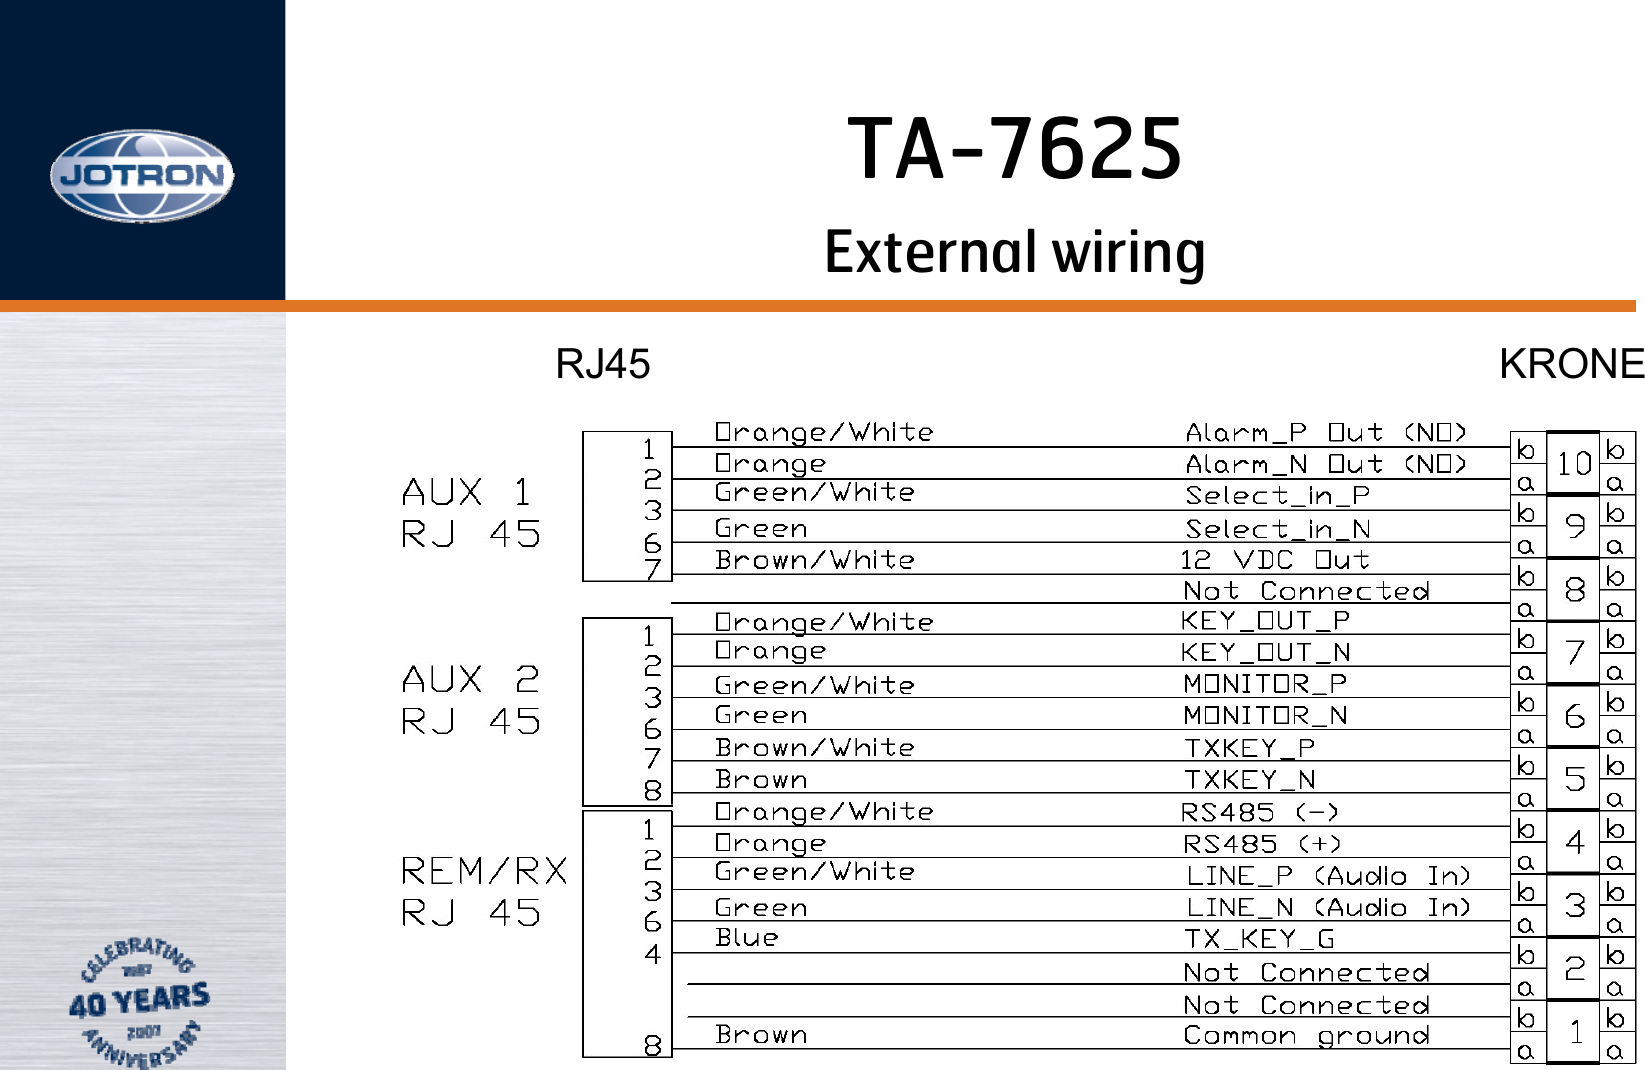 External wiringRJ45                                               KRONETA-7625